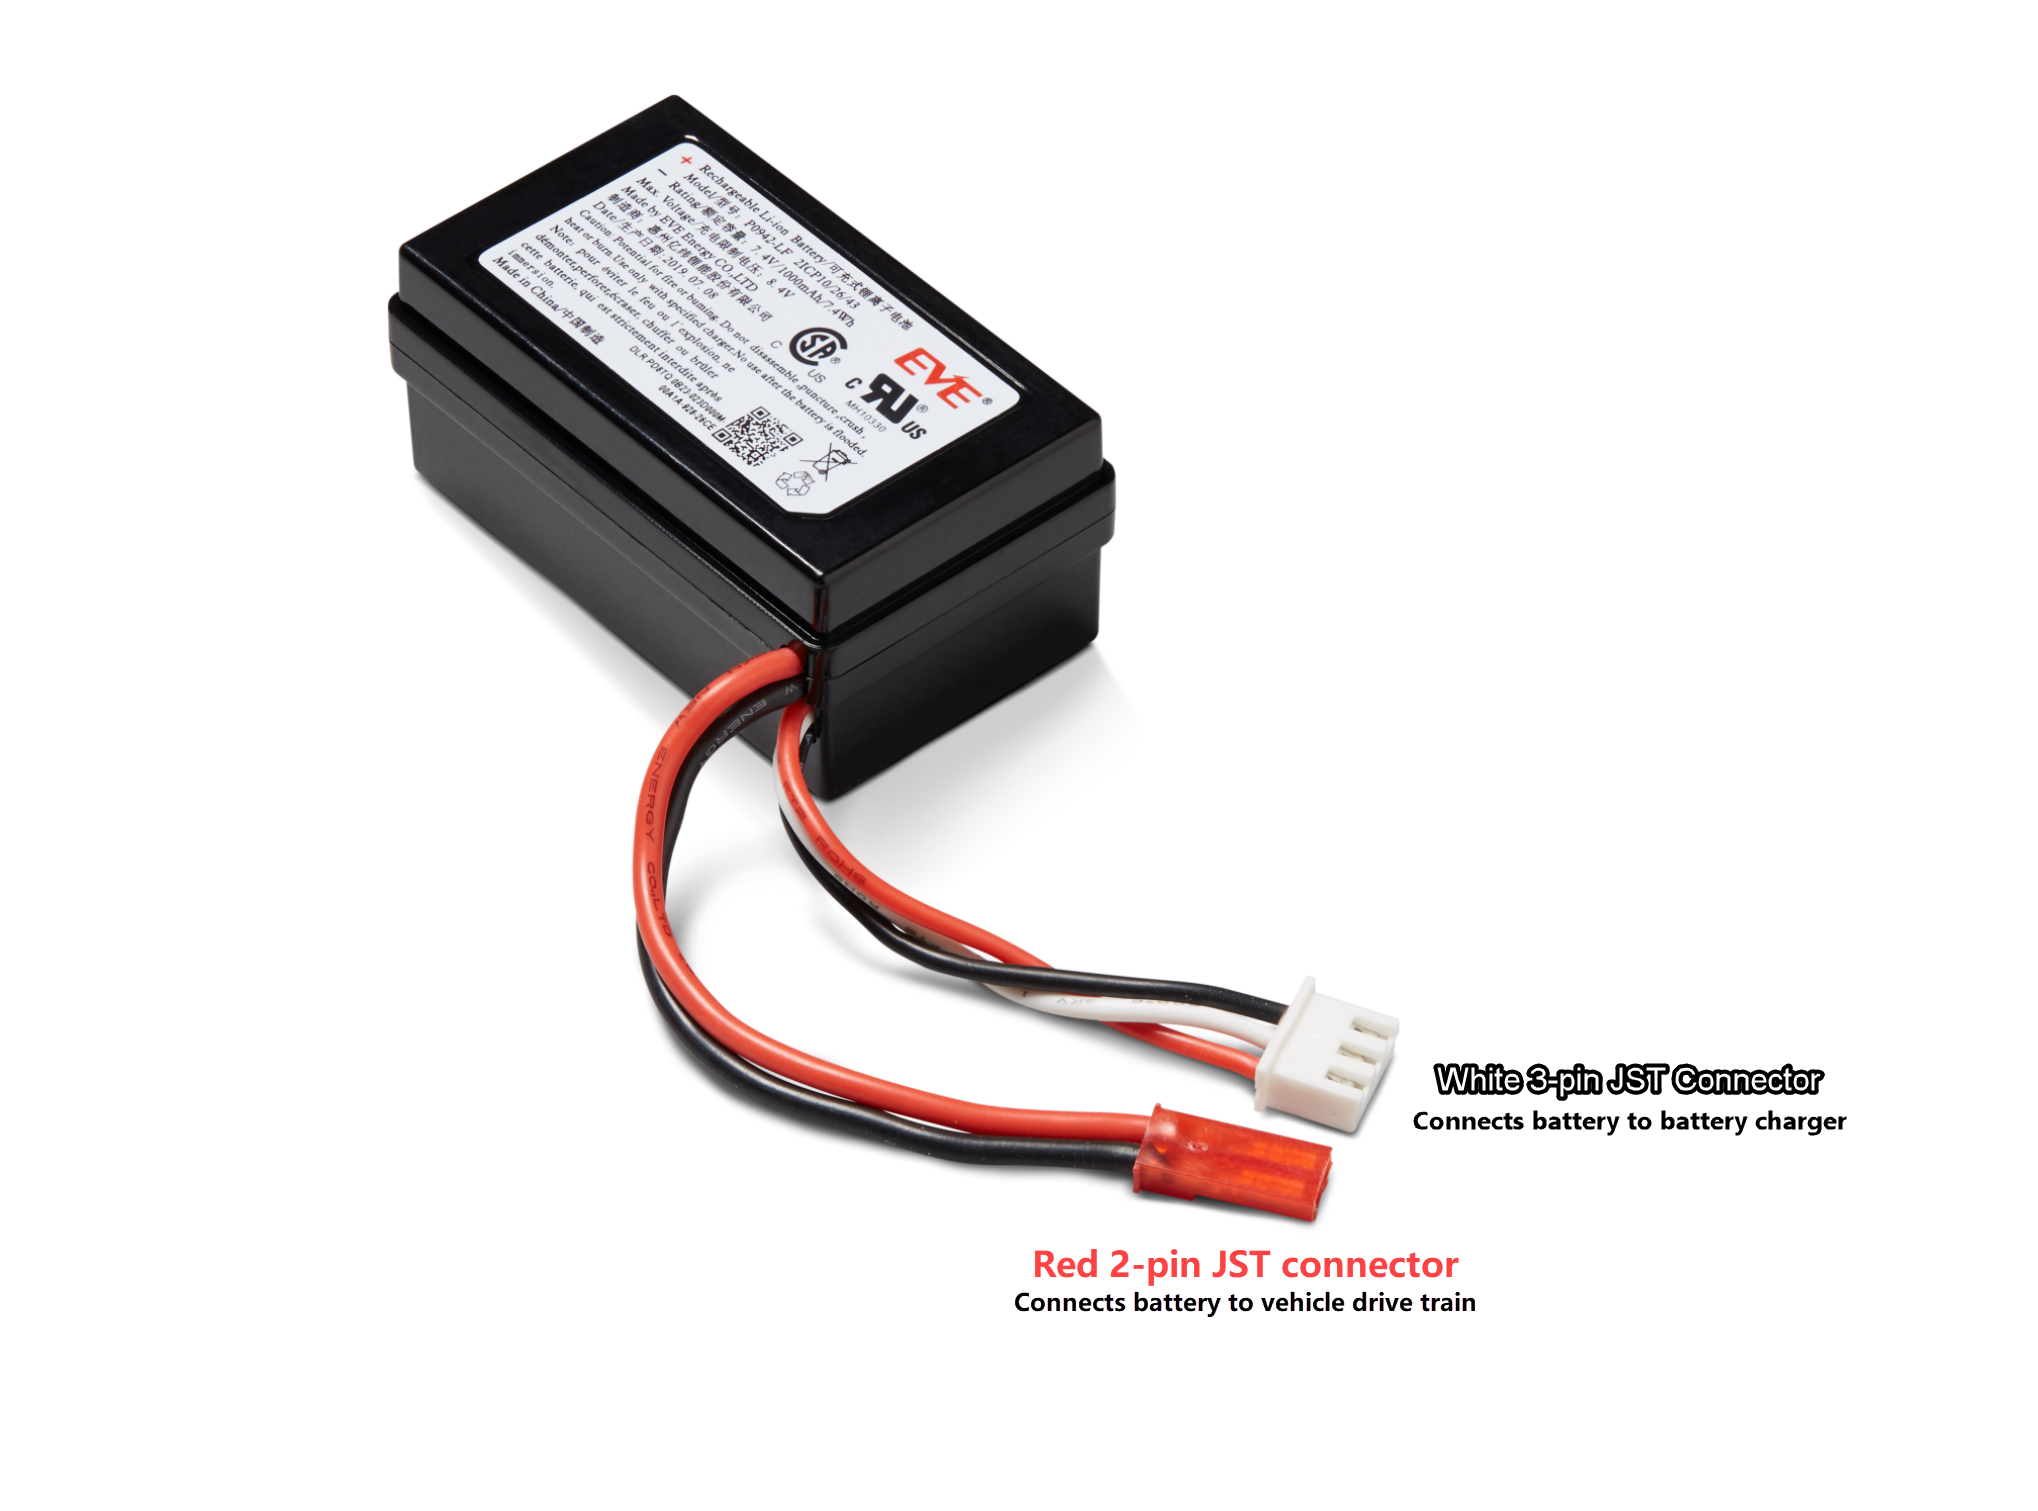 图片：标有车辆驱动模块蓄电池的红色和白色连接器。黑色、红色和白色电缆末端的白色 3-pin 连接器将车辆模块蓄电池连接到其充电器上。位于黑色和红色电缆末端的红色 2-pin 连接器将电池连接到车辆驱动系统。